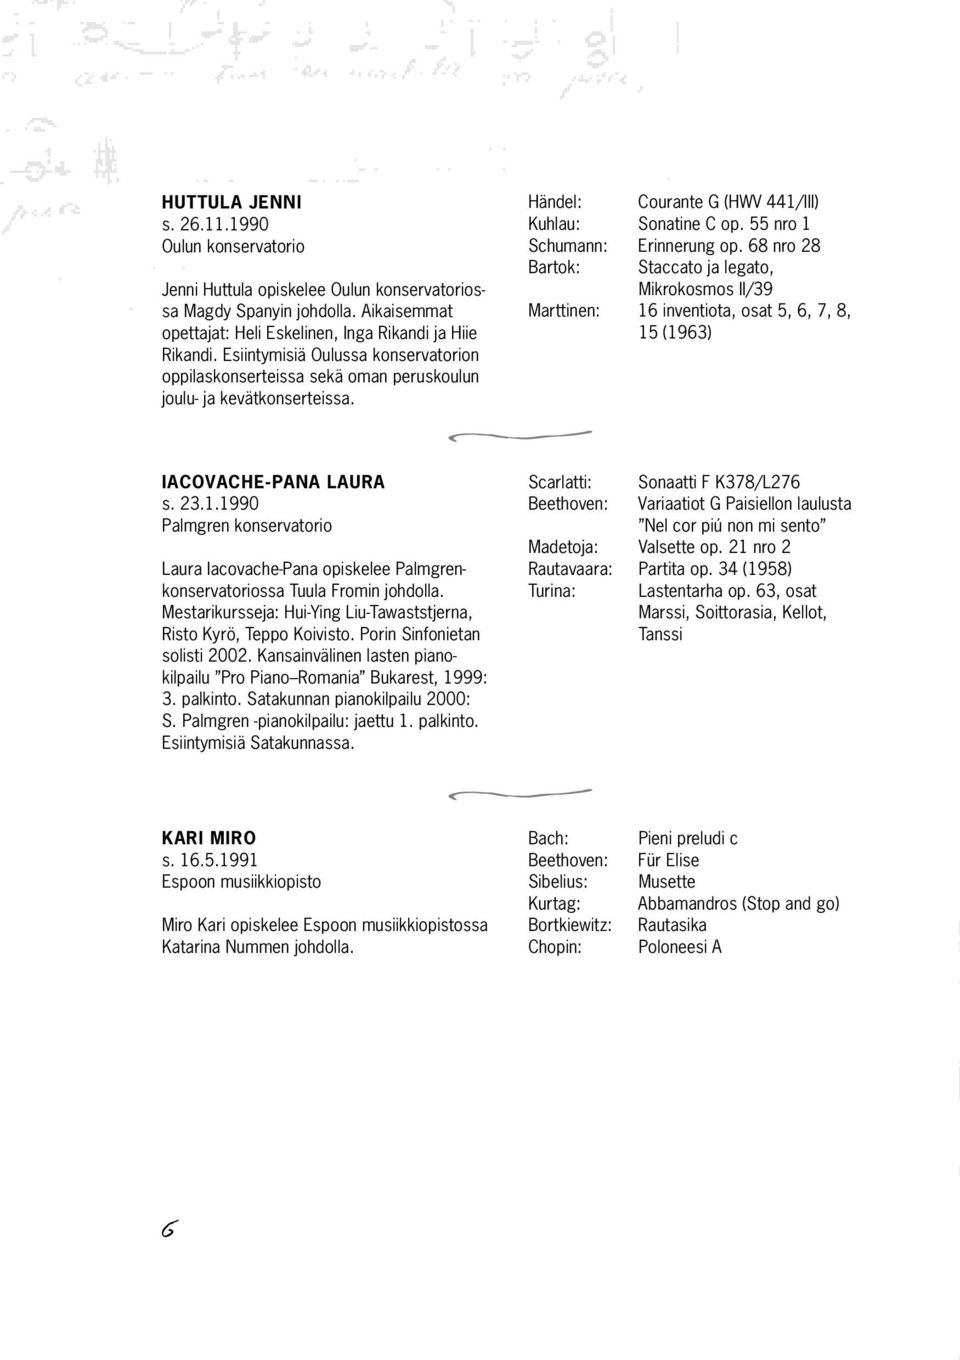 1990 Palmgren konservaorio Laura Iacovache-Pana opiskelee Palmgrenkonservaoriossa Tuula Fromin johdolla. Mesarikursseja: Hui-Ying Liu-Tawassjerna, Riso Kyrö, Teppo Koiviso.